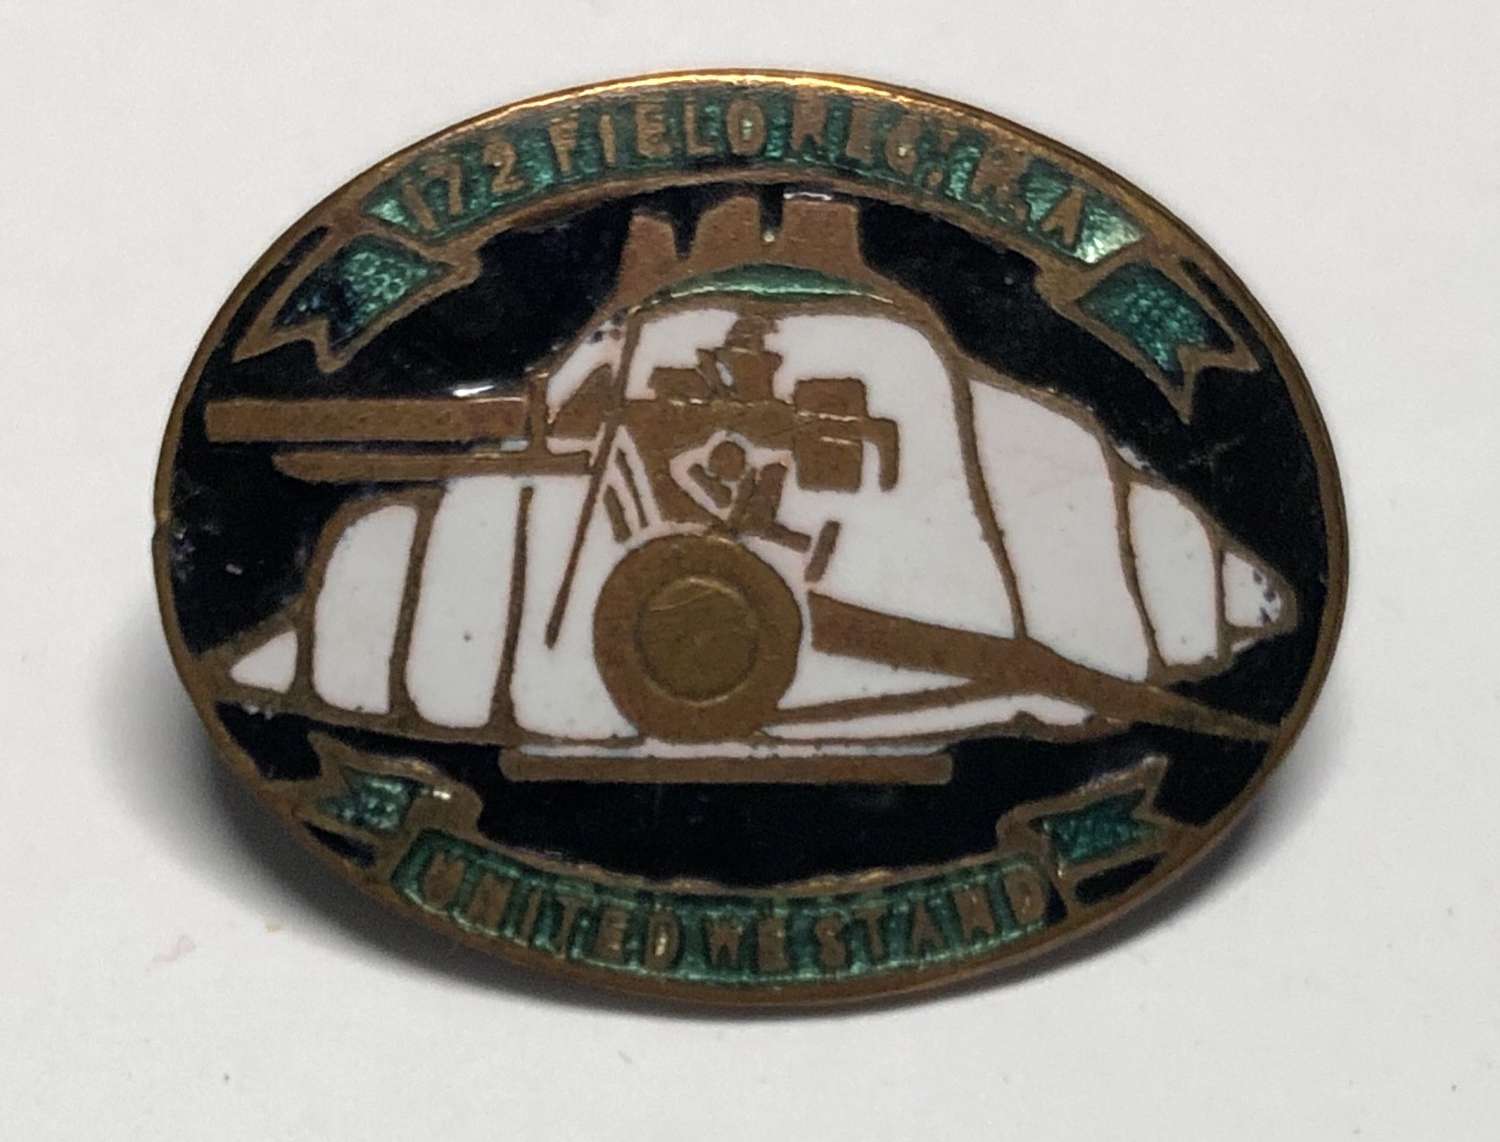 172 Field Battery, Royal Artillery WW2 enamelled oval badge.